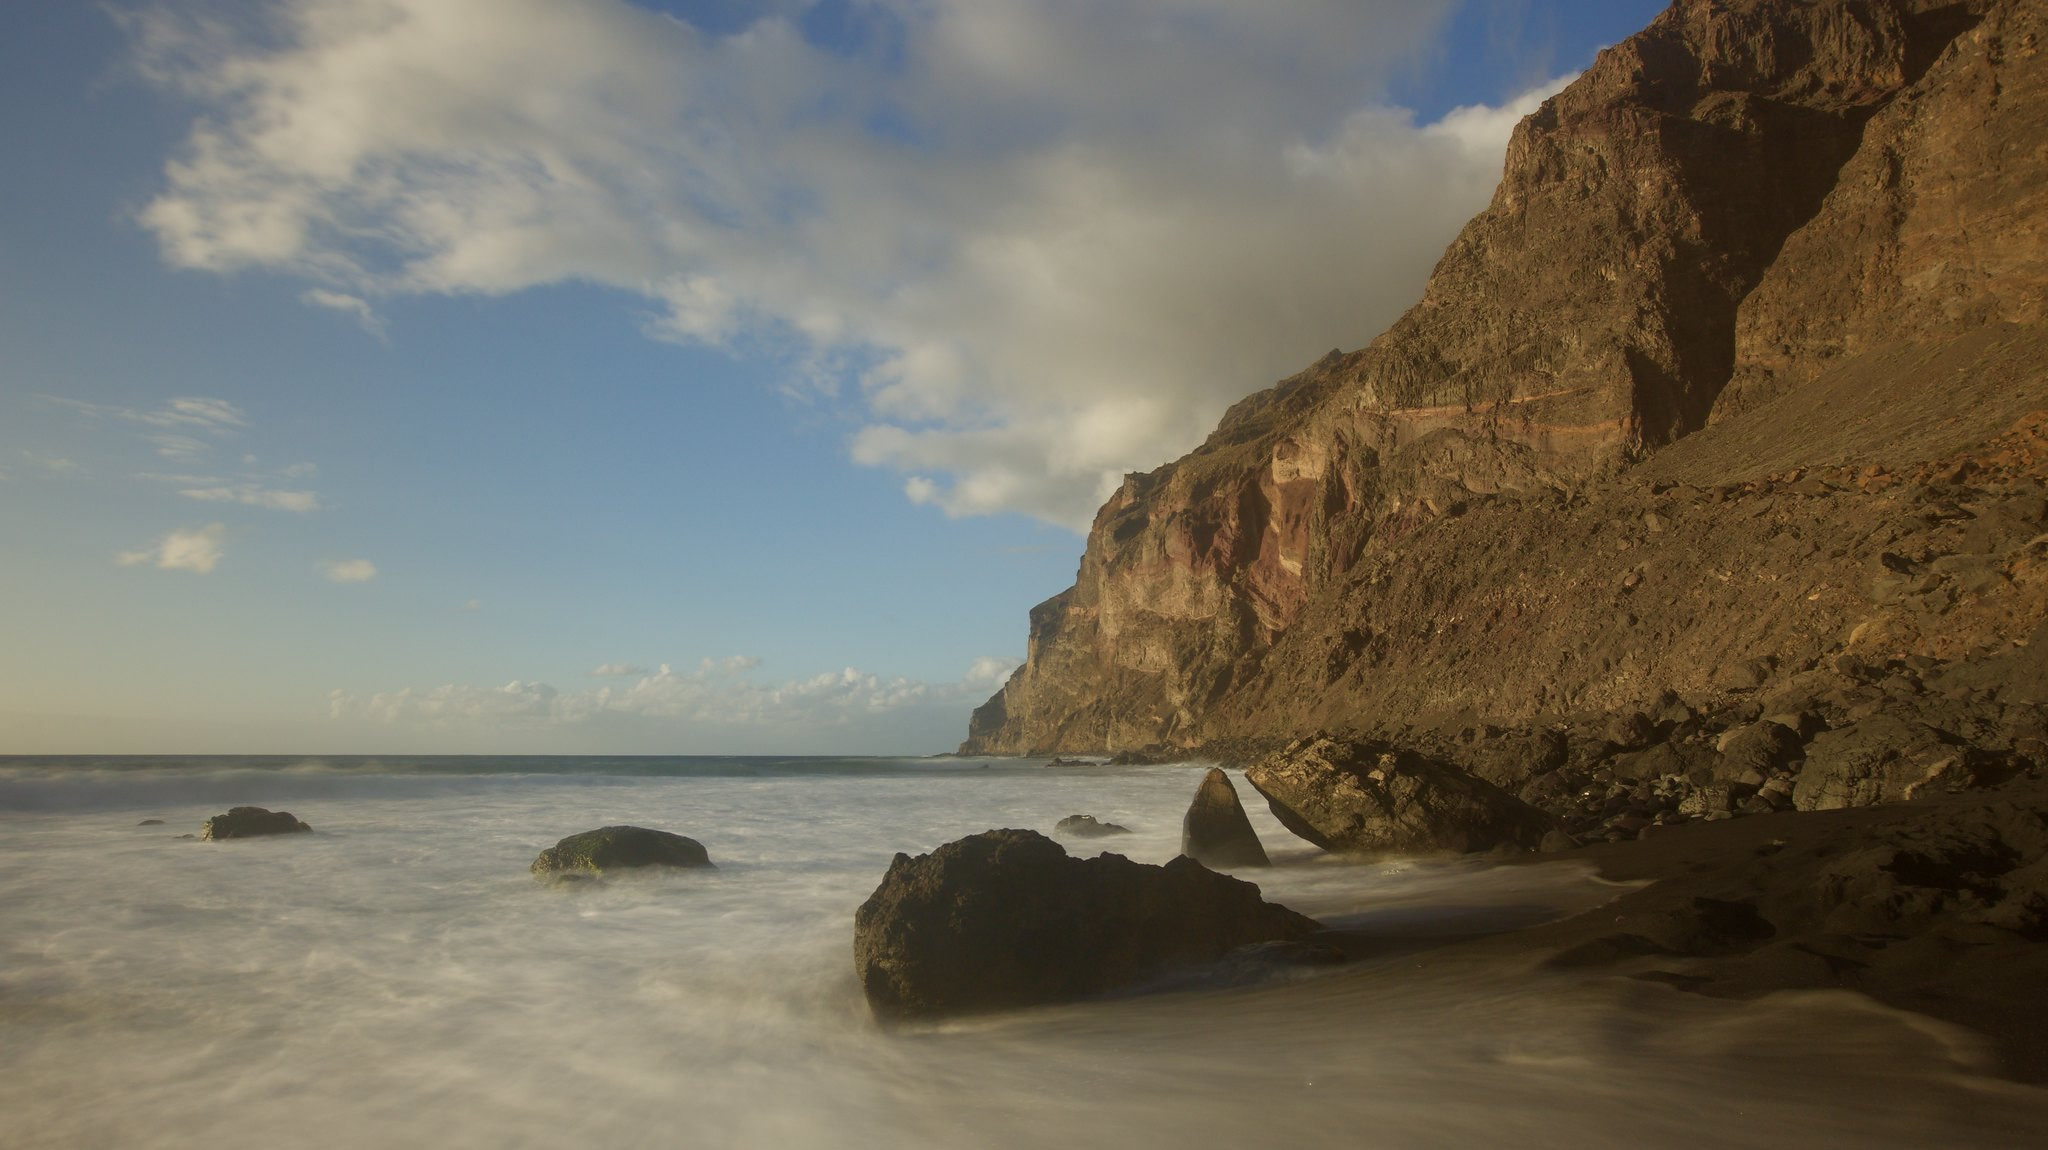 EA8/DF4UE Playa del Ingles, Gomera, Canary Islands